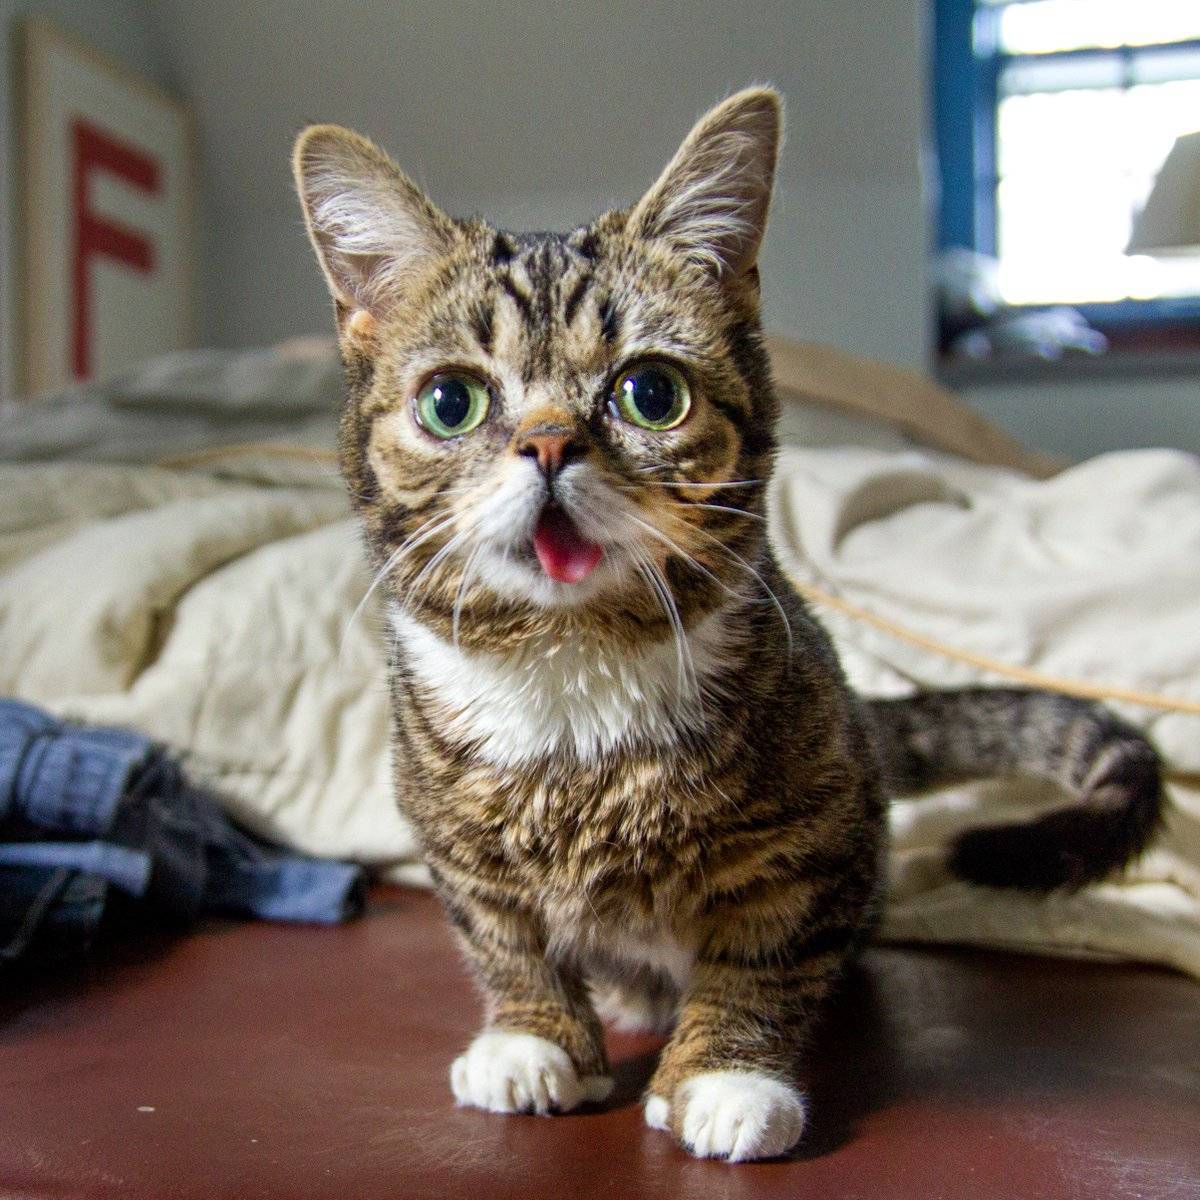 Самые маленькие кошки в мире: топ-10 домашних пород с фото и названиями